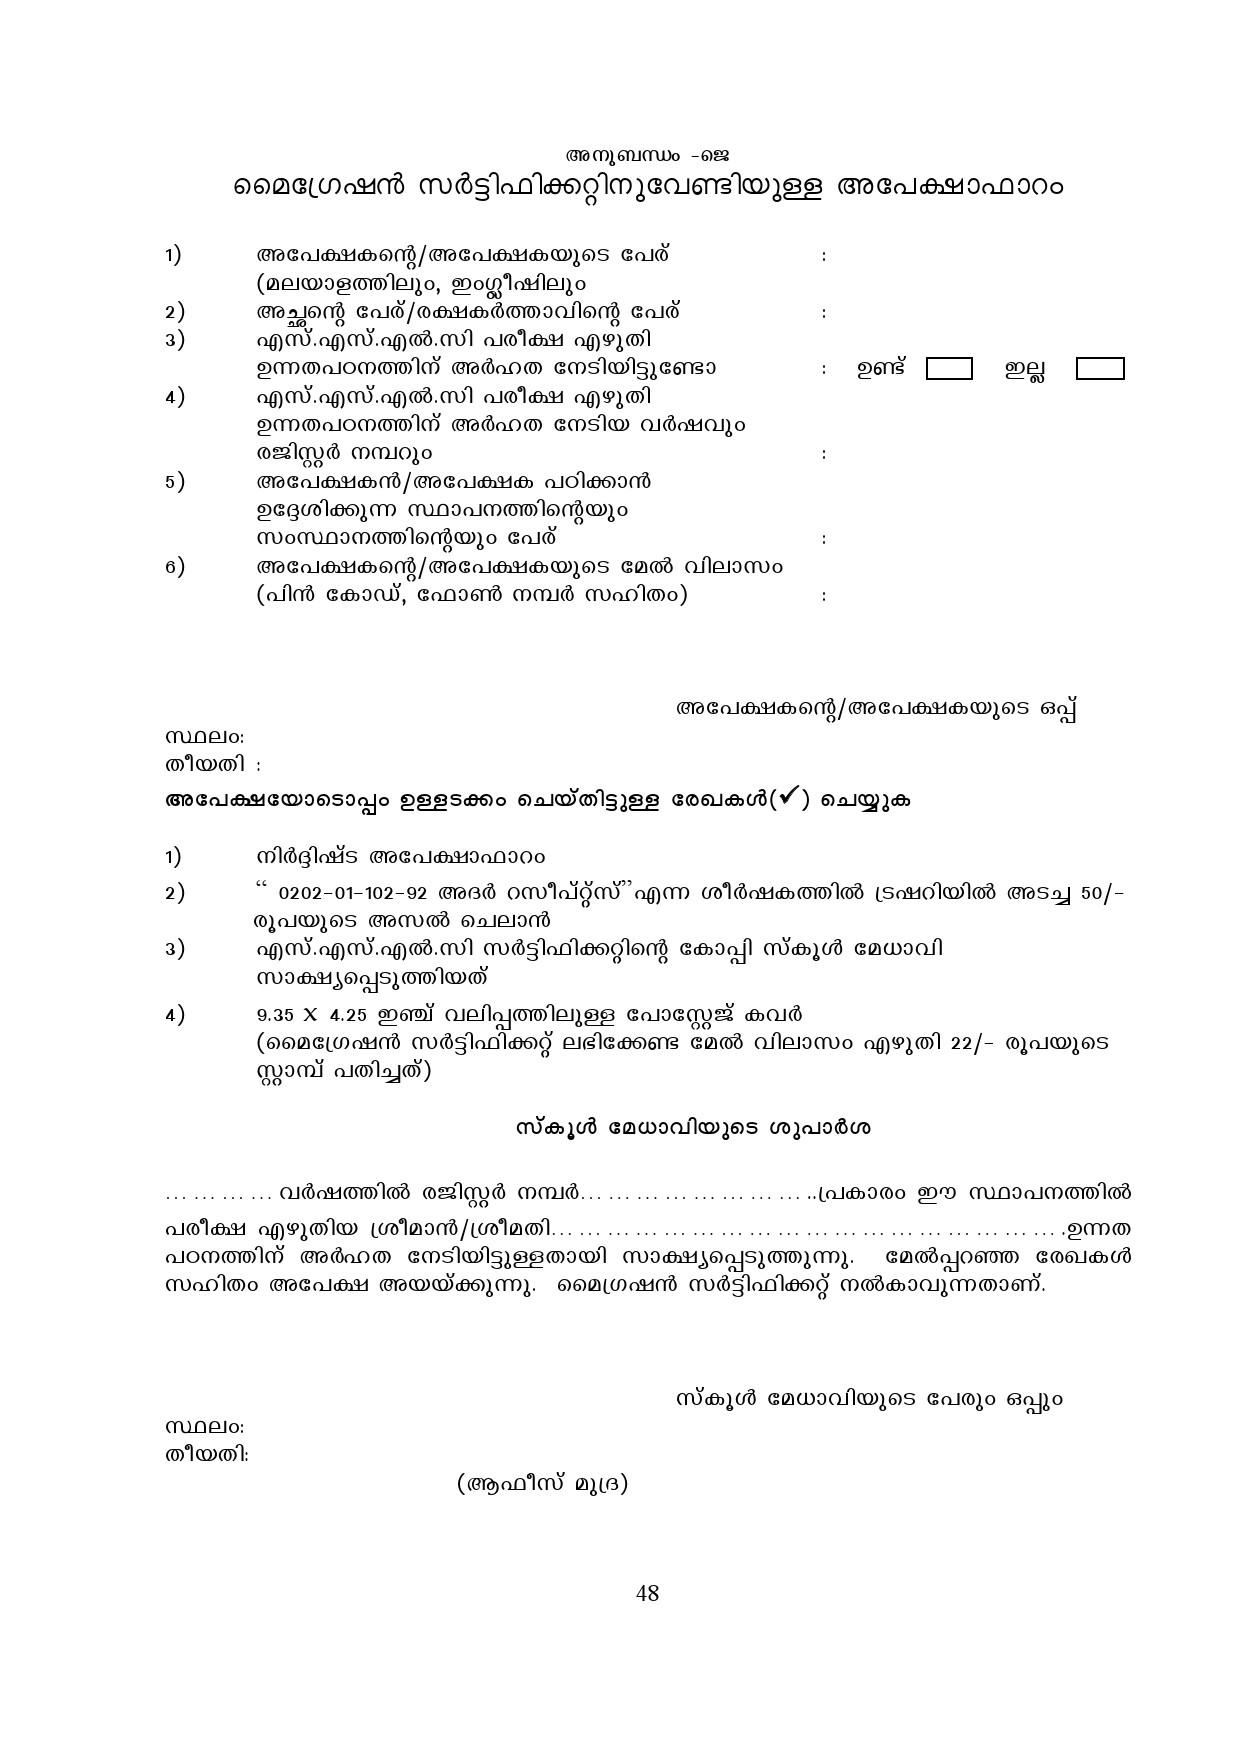 Kerala SSLC Exam Result 2019 - Notification Image 48